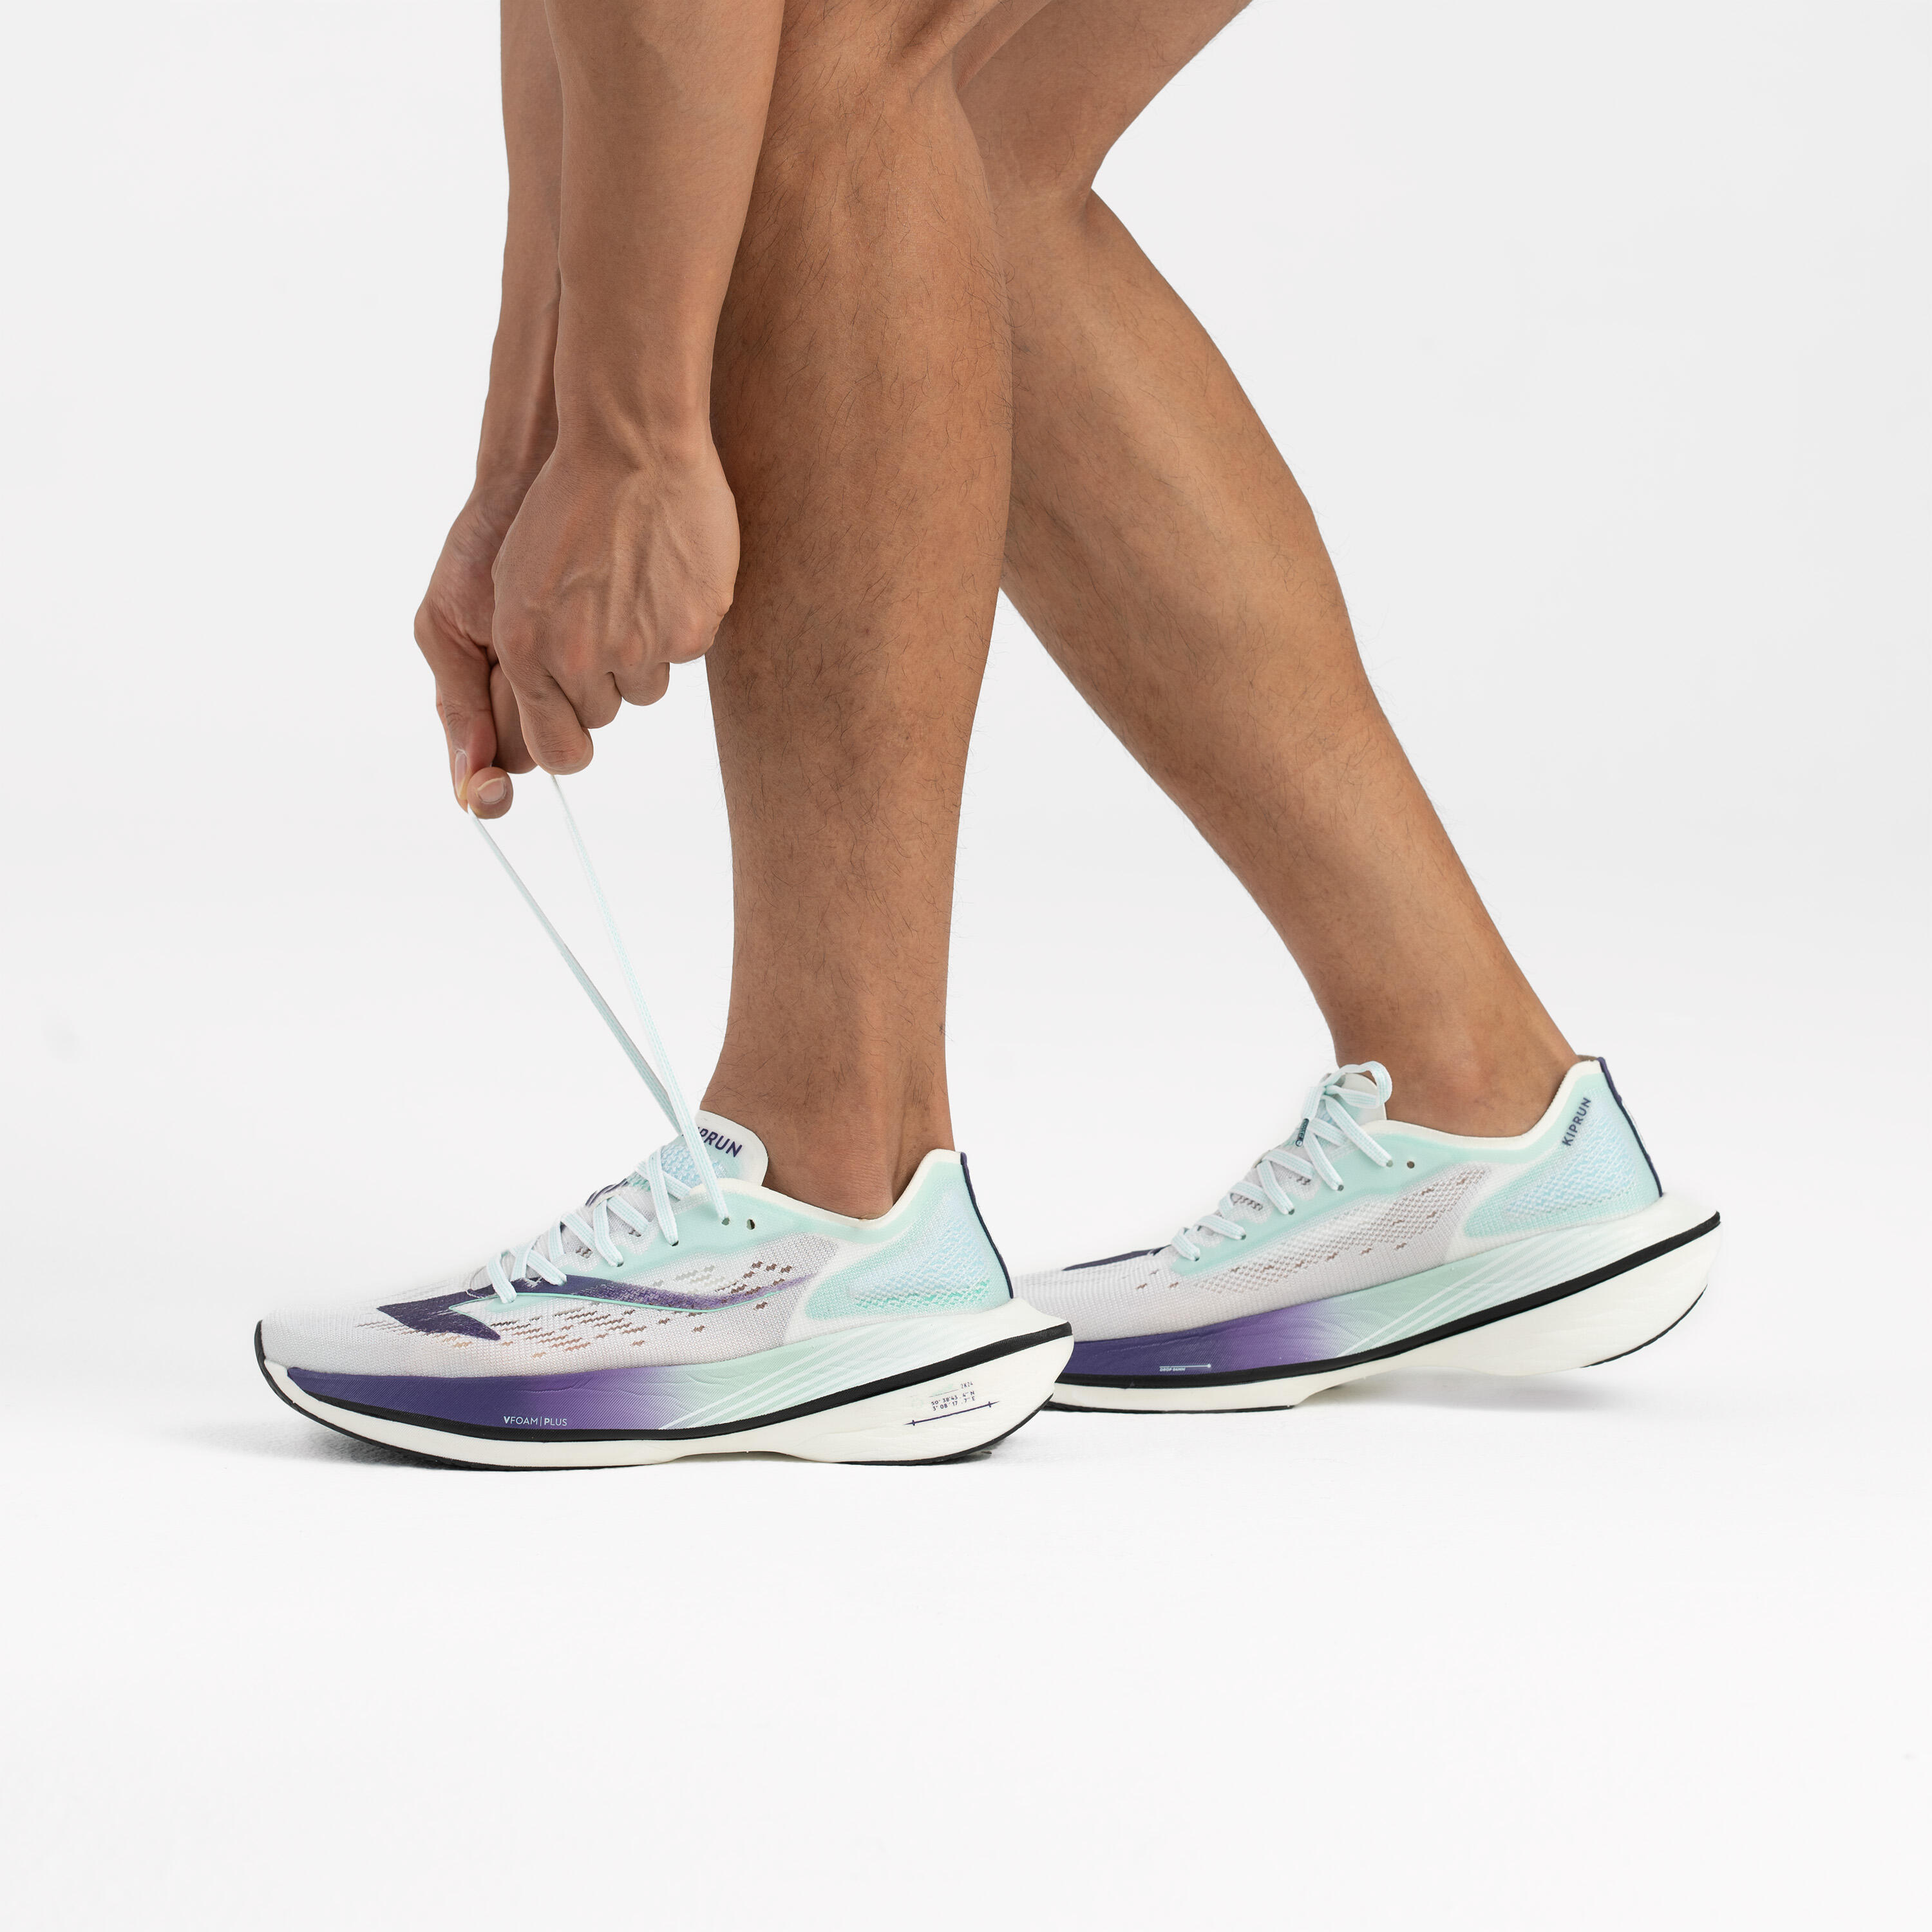 Men's Carbon Plate Running Shoes - KD 900X LD - KIPRUN